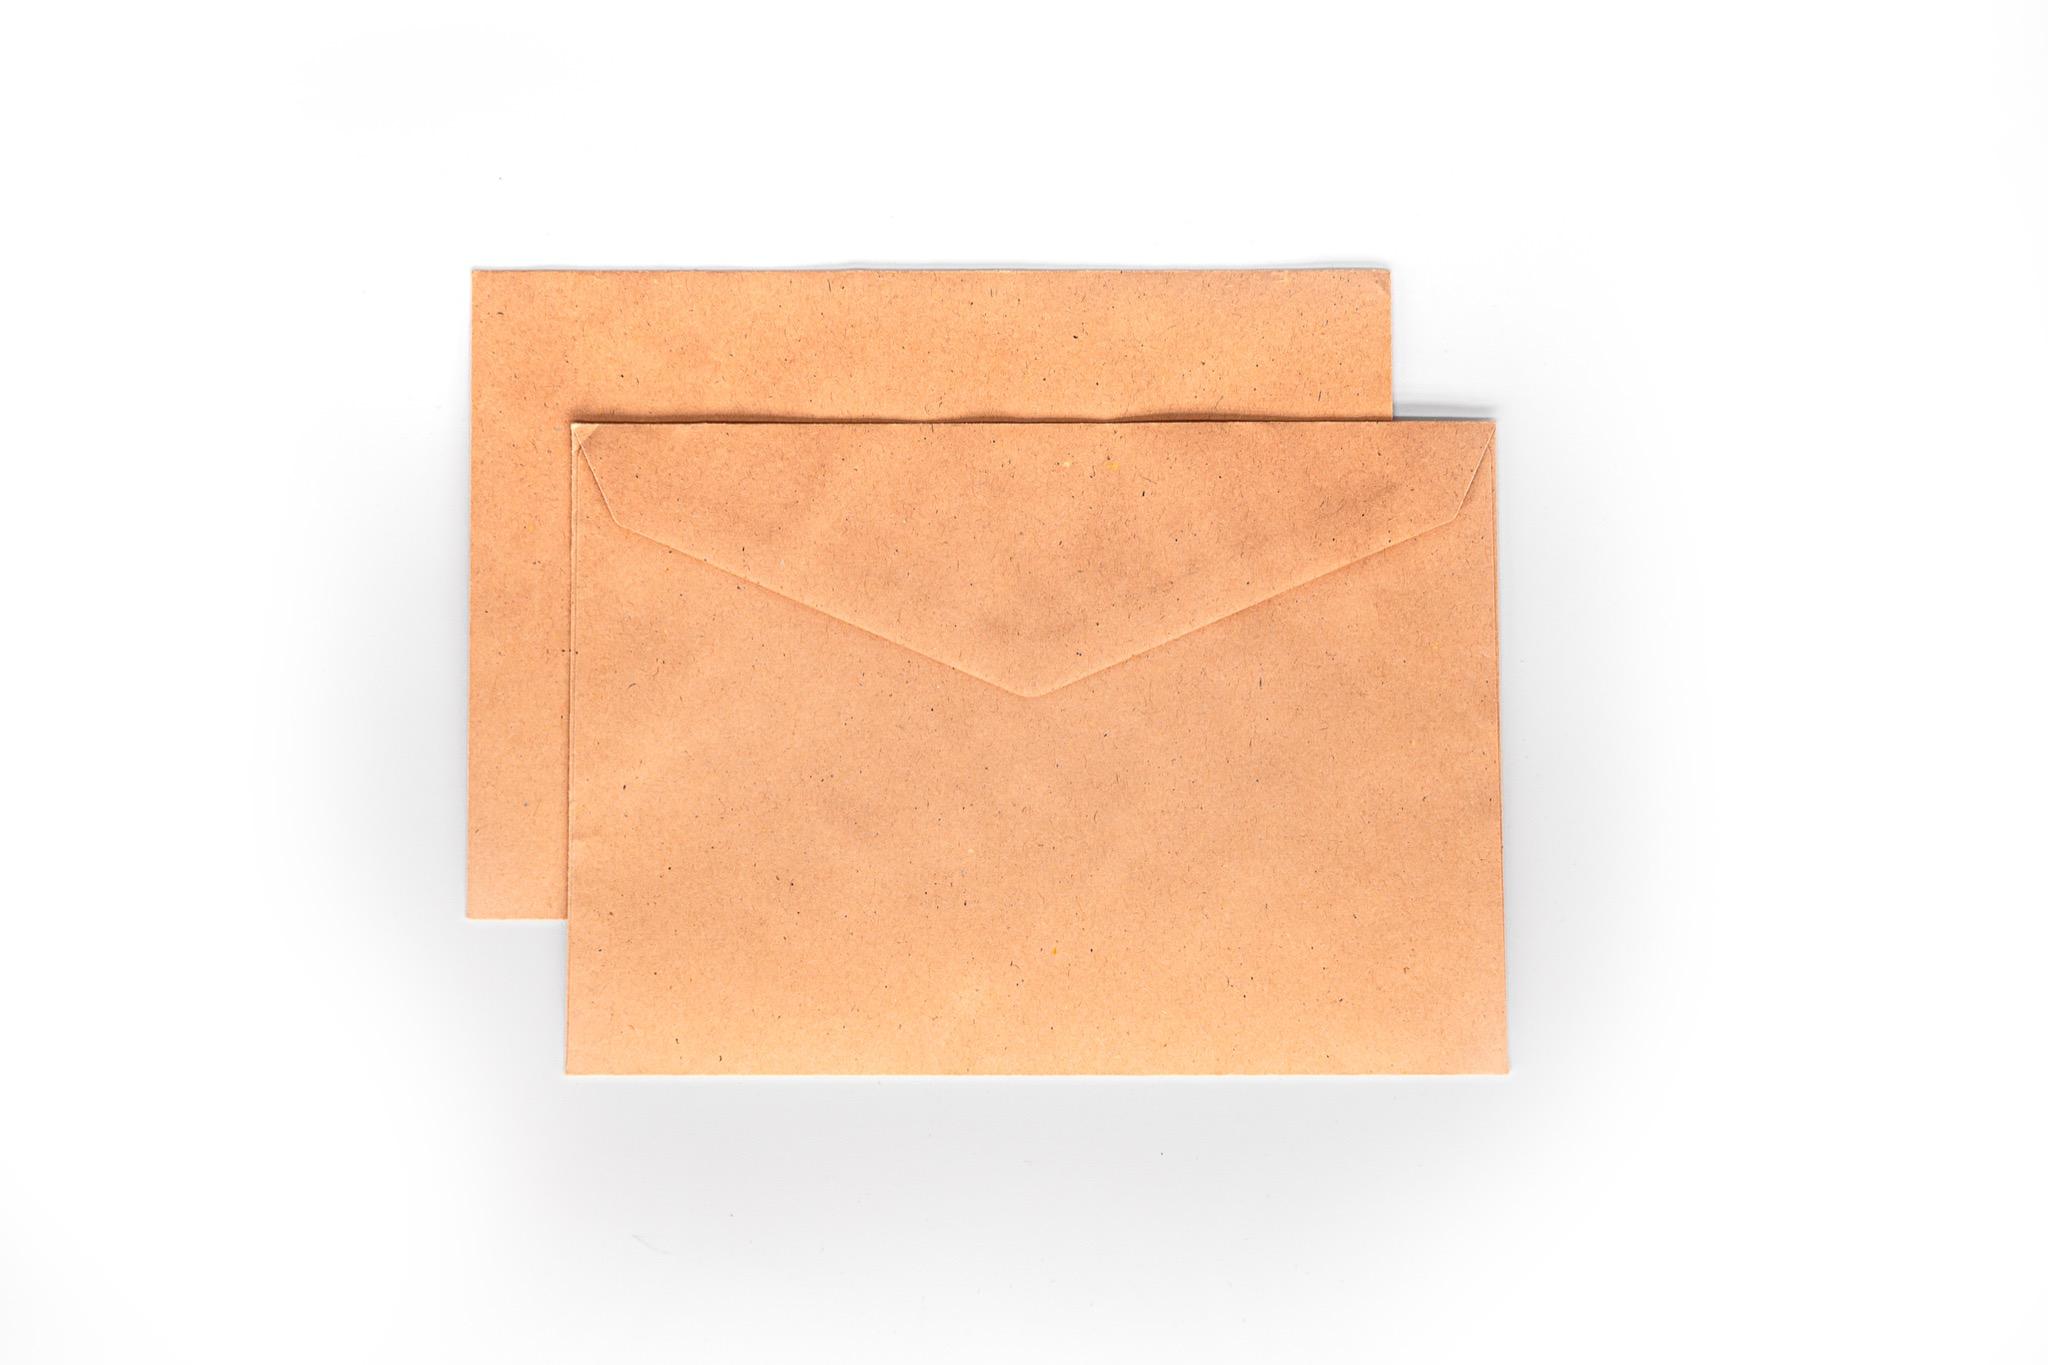 Enveloppes Papier Coloré A5/ C5 Vert